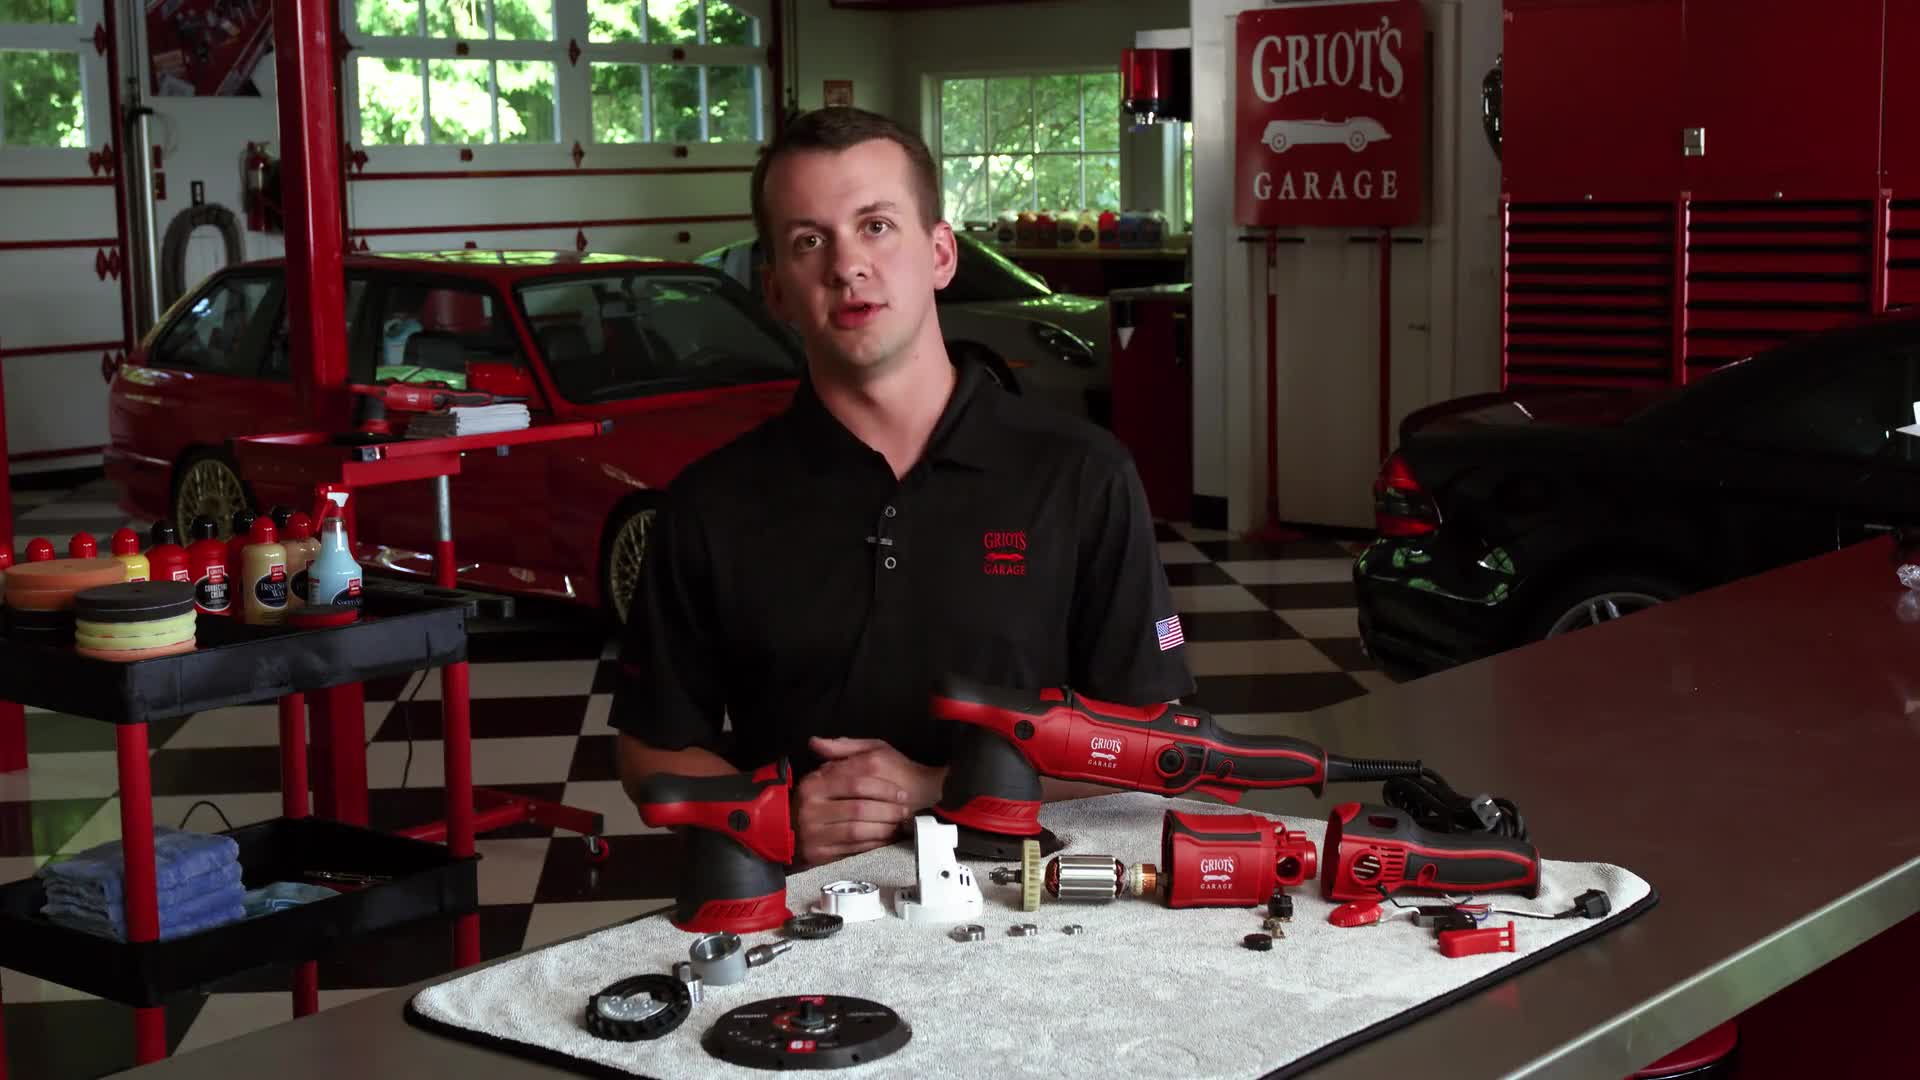 Griot's Garage G9 Random Orbital Polisher — Bling Bling King Clean